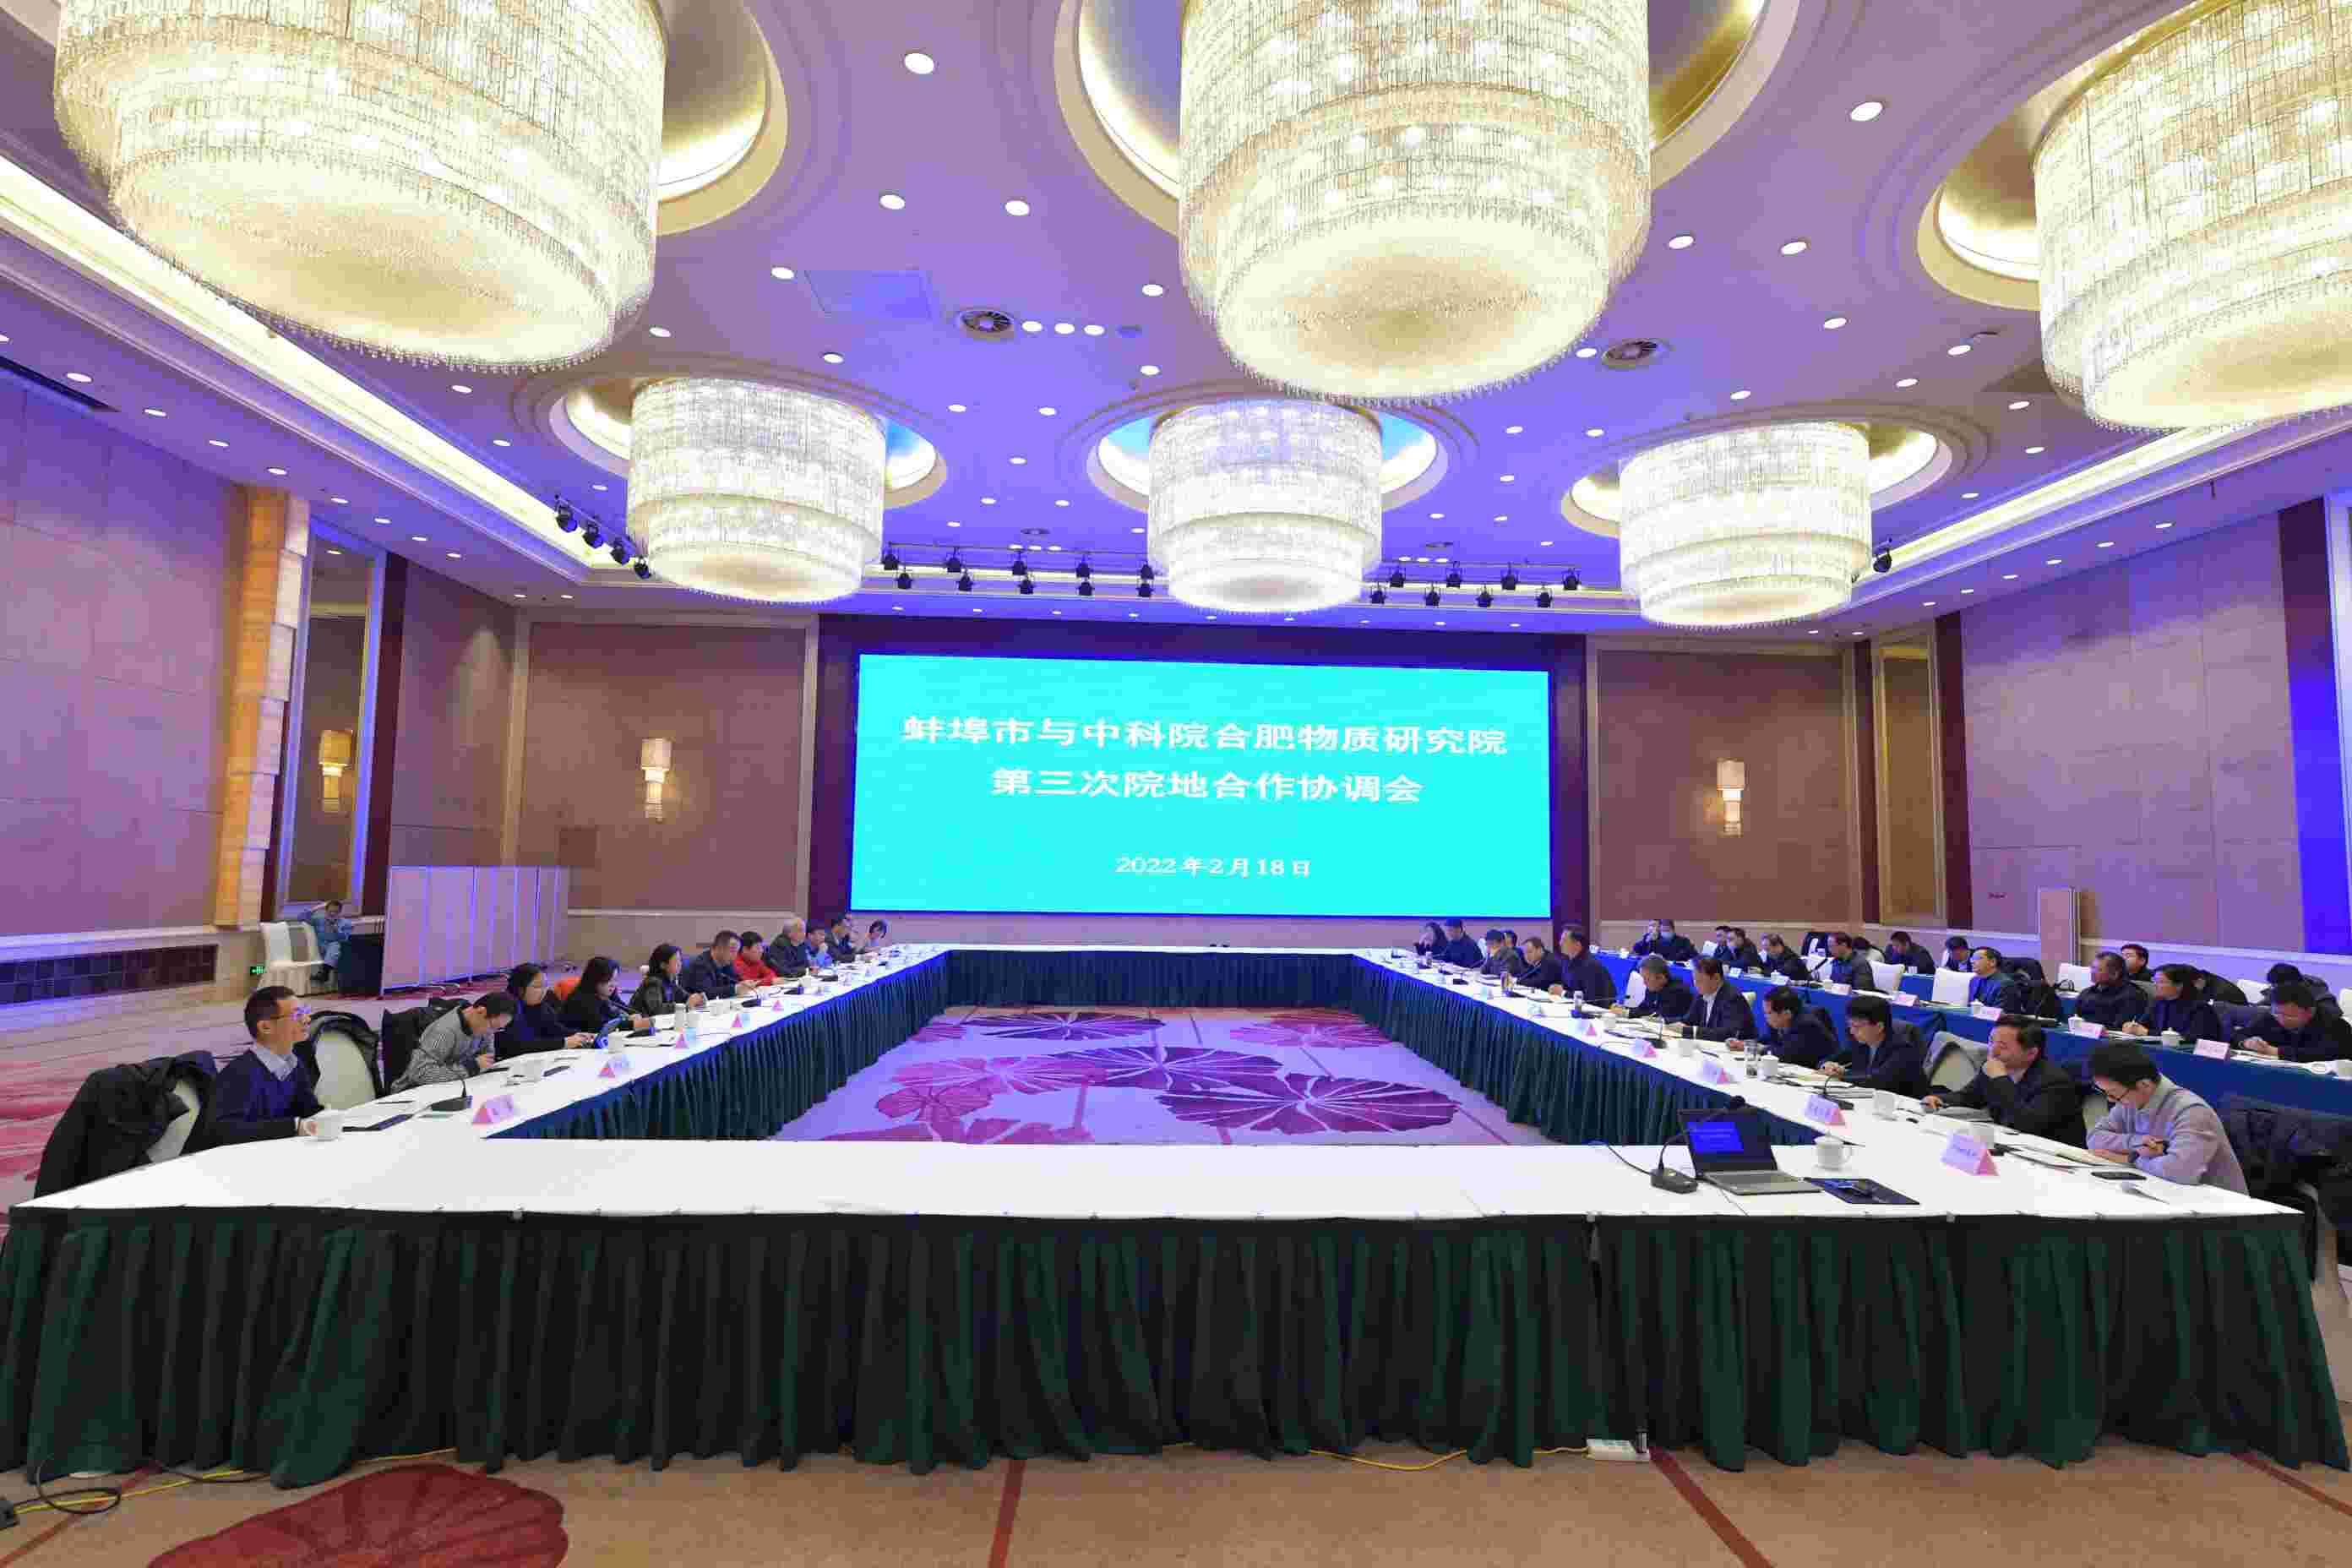 مدينة بنجبو ومعهد خفي للعلوم الفيزيائية , الأكاديمية الصينية للعلوم انعقد الاجتماع الثالث للتعاون والتنسيق بين المستشفى والمجتمع المحلي في بكين